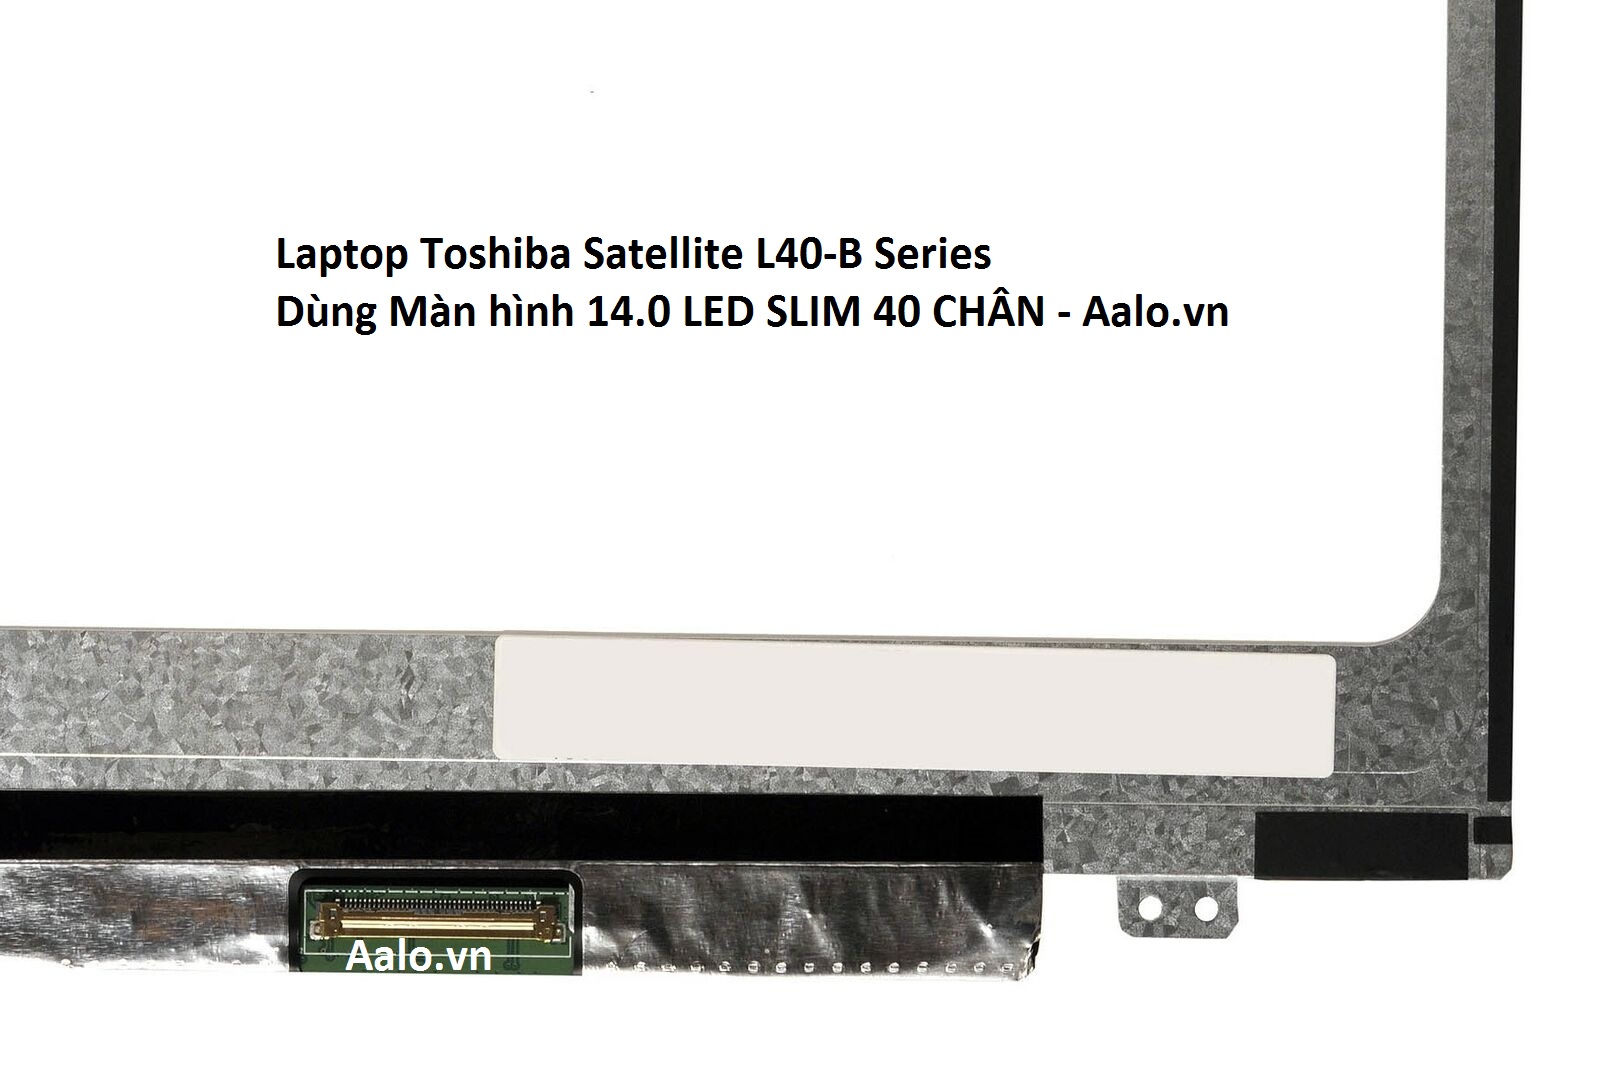 Màn hình Laptop Toshiba Satellite L40-B Series - Aalo.vn